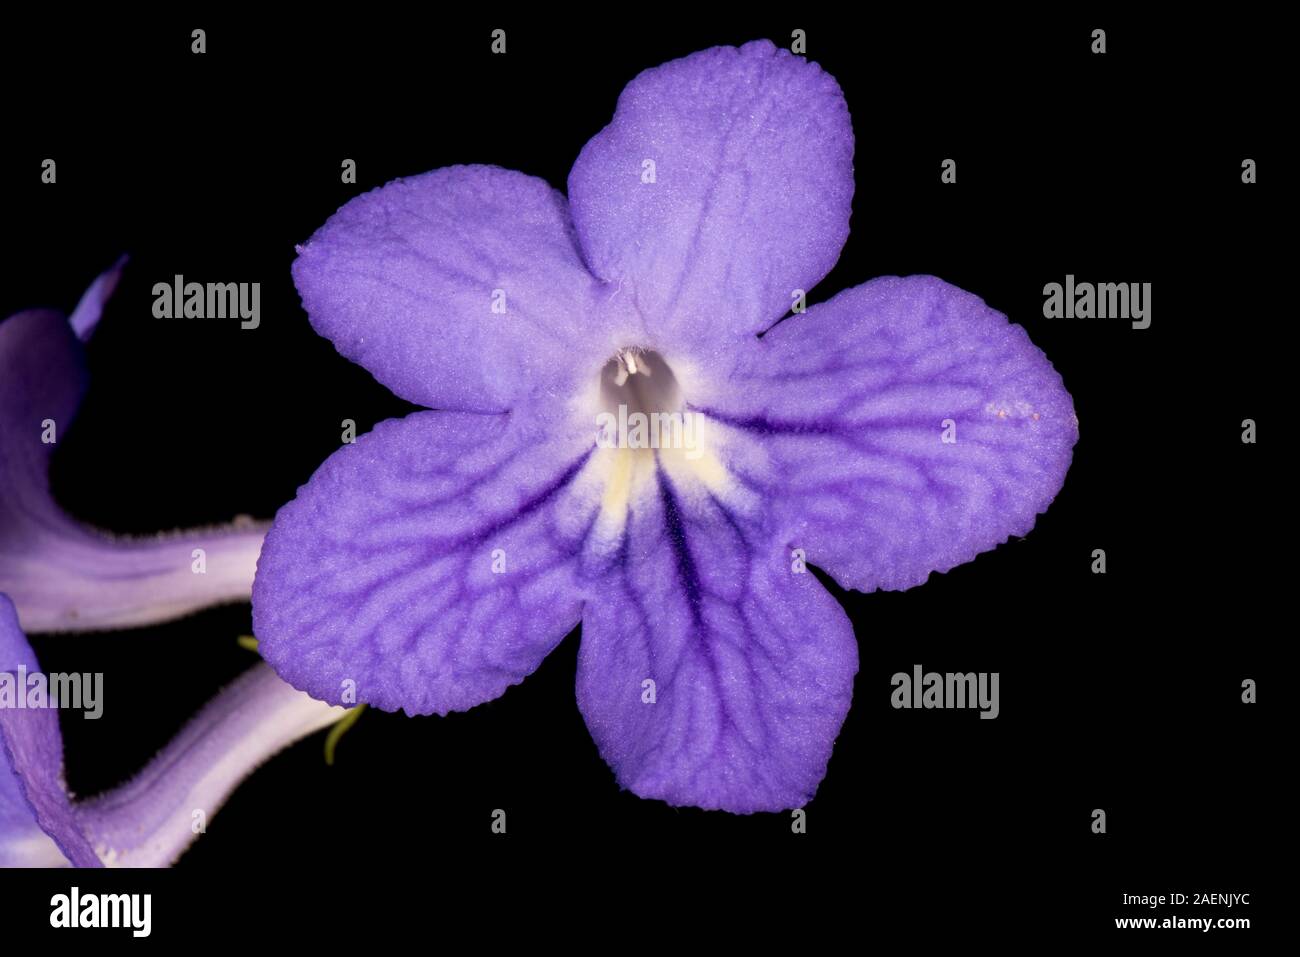 Cape primrose, Streptocarpus spp., blu fiore viola con venature scure su una casa popolare impianto provenienti da regioni di generi afrotropicali Foto Stock